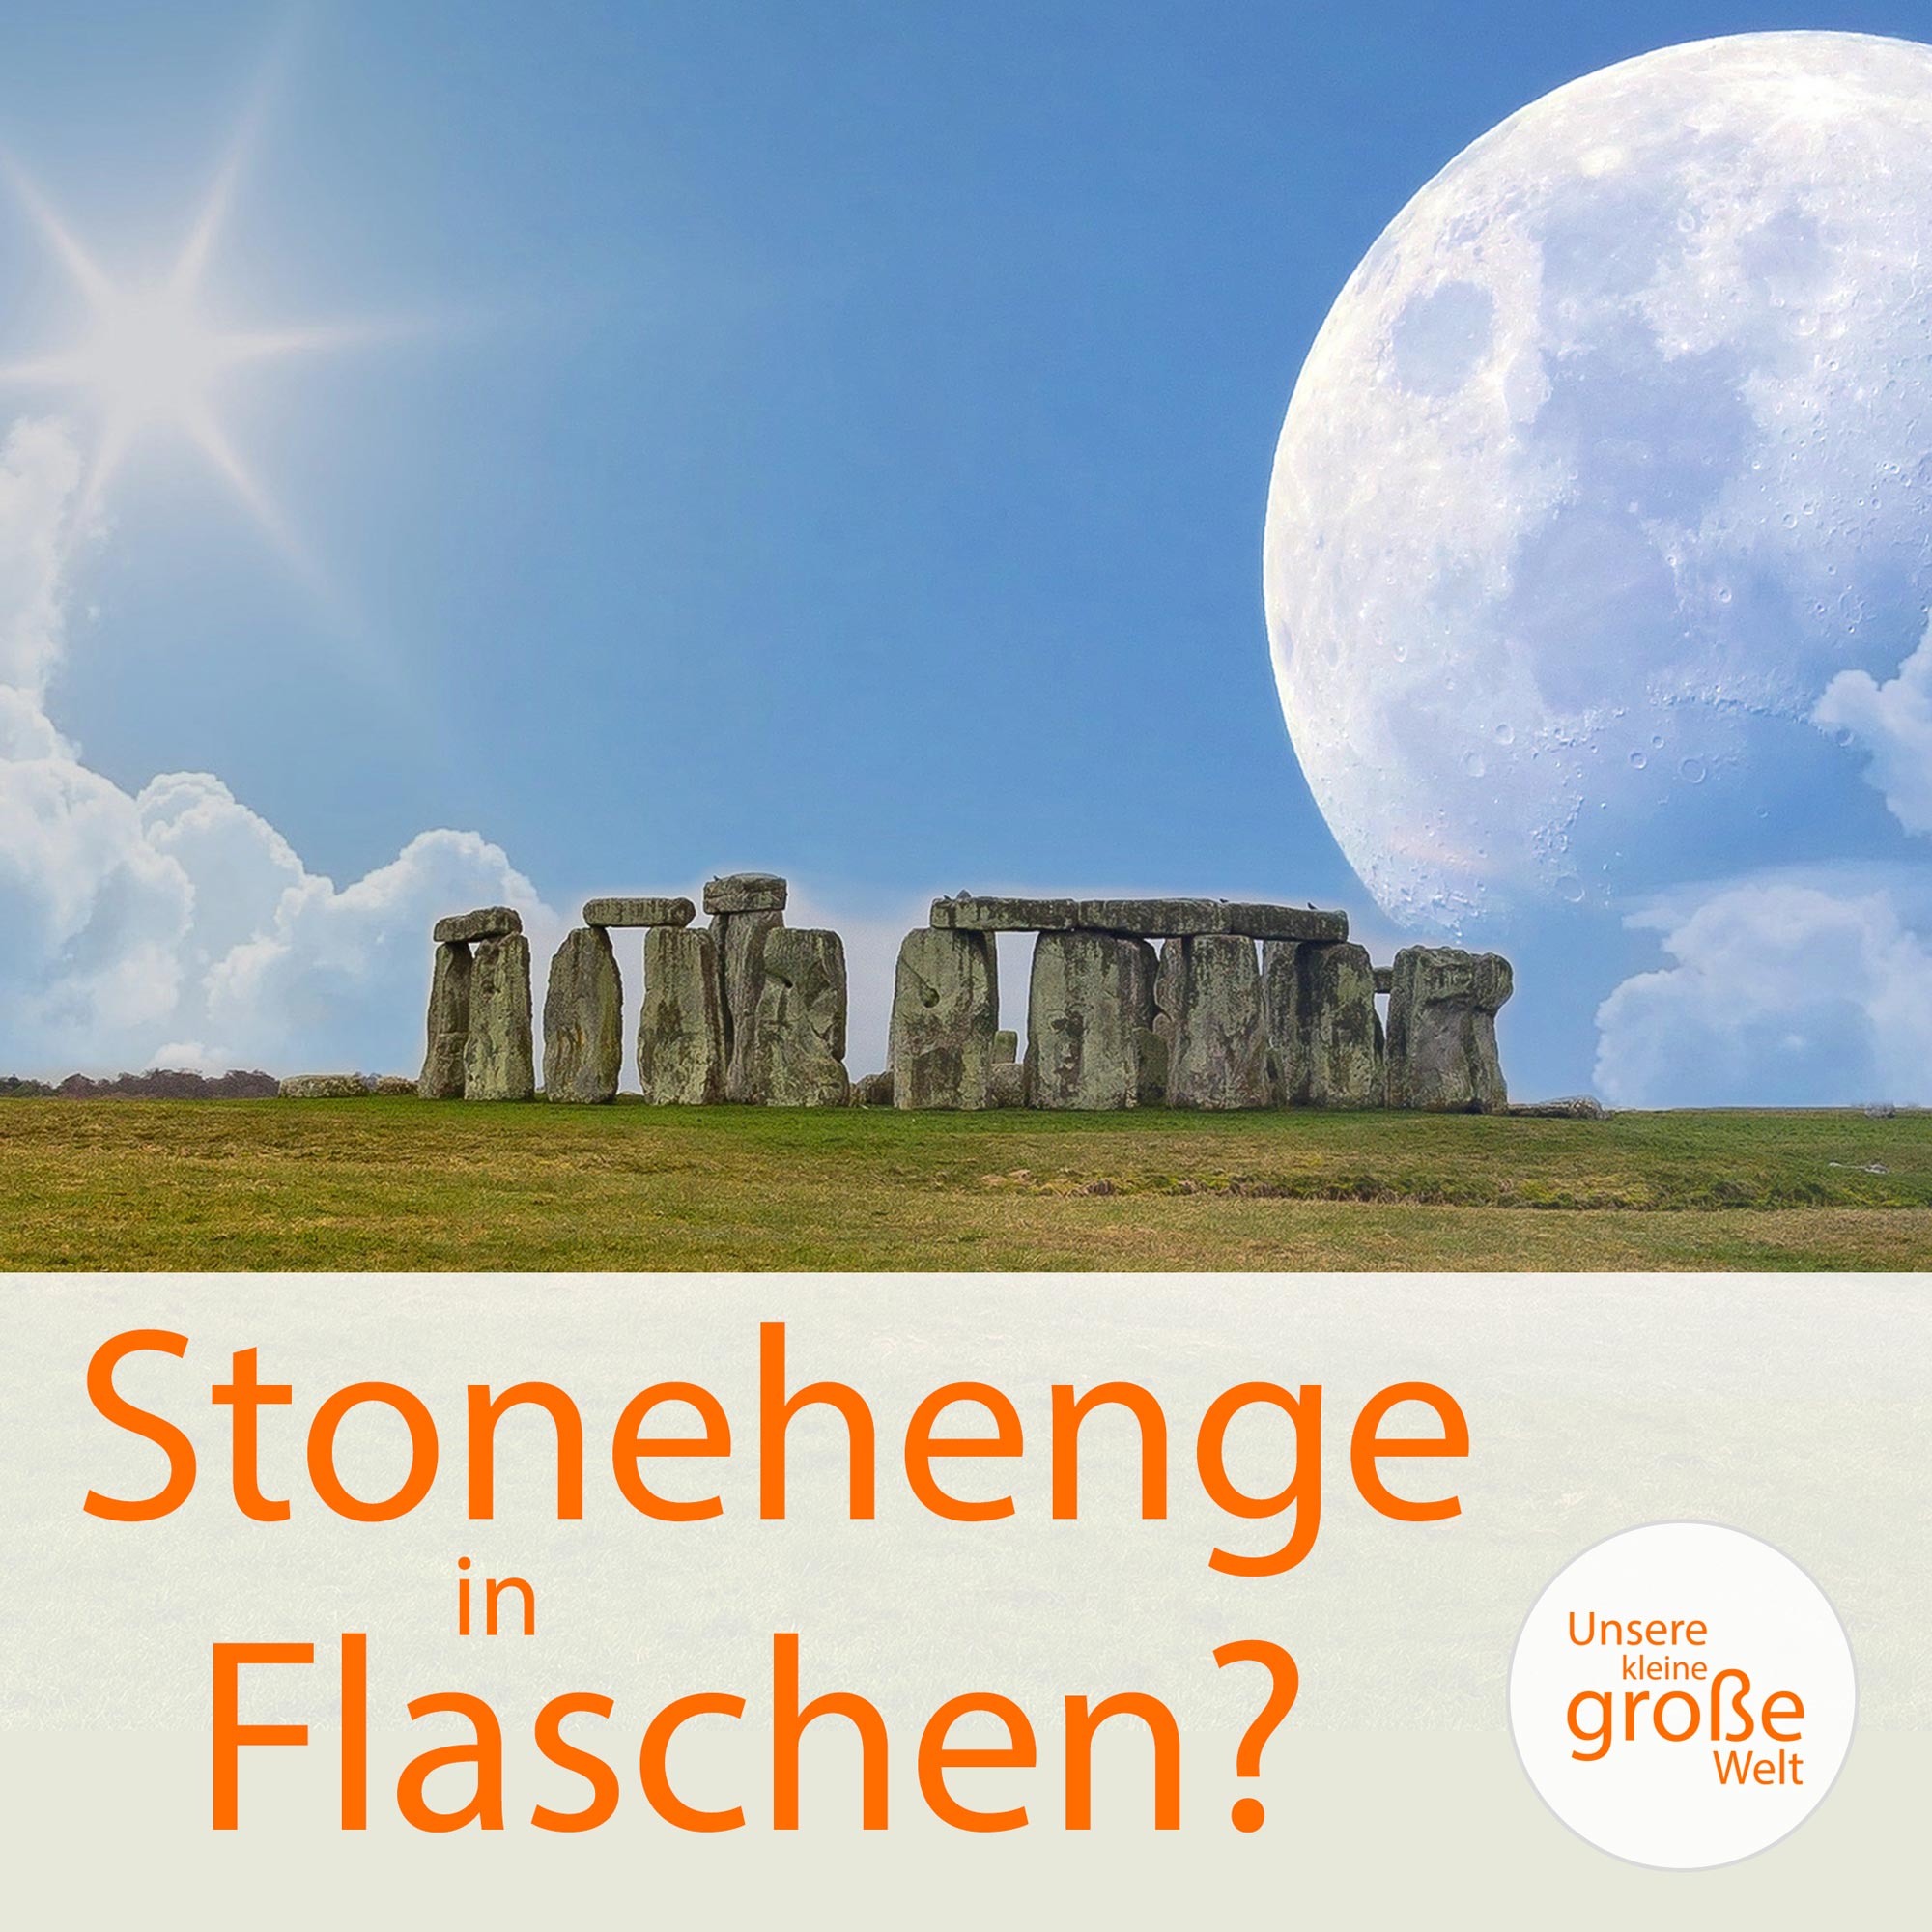 Unsere kleine, große Welt Folge 86: Stonehenge in Flaschen?